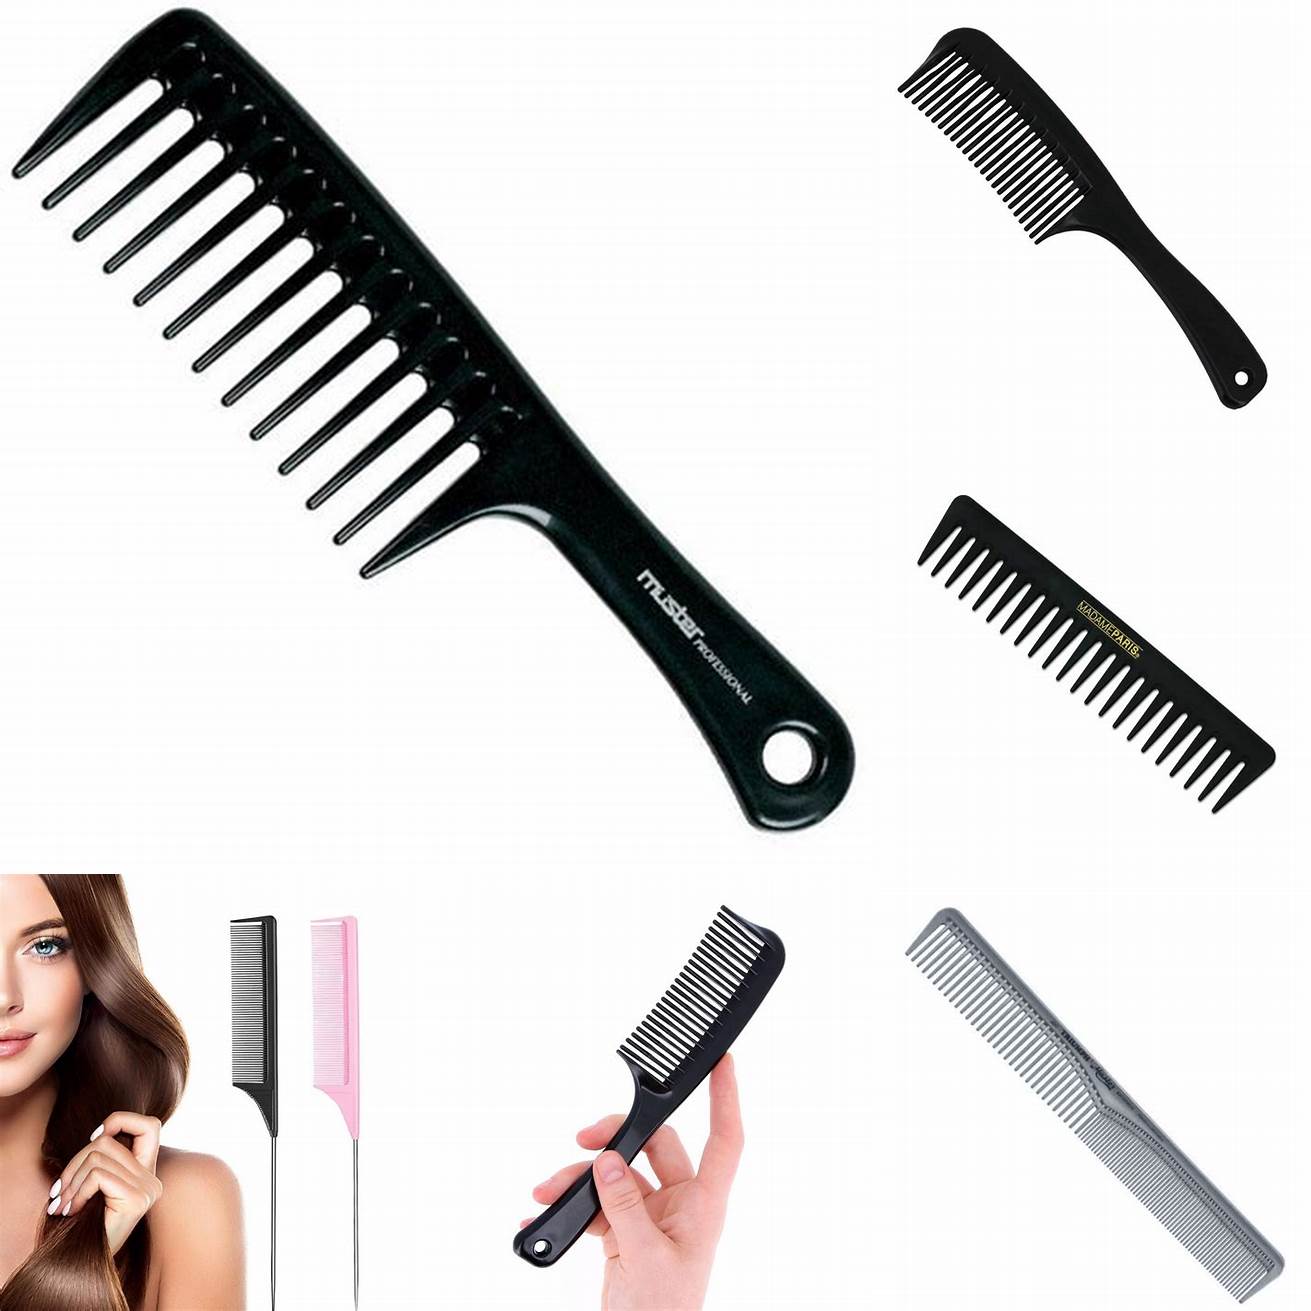 2 Utilisez un peigne à dents fines pour couper vos cheveux Cela vous aidera à obtenir une coupe plus précise et plus uniforme